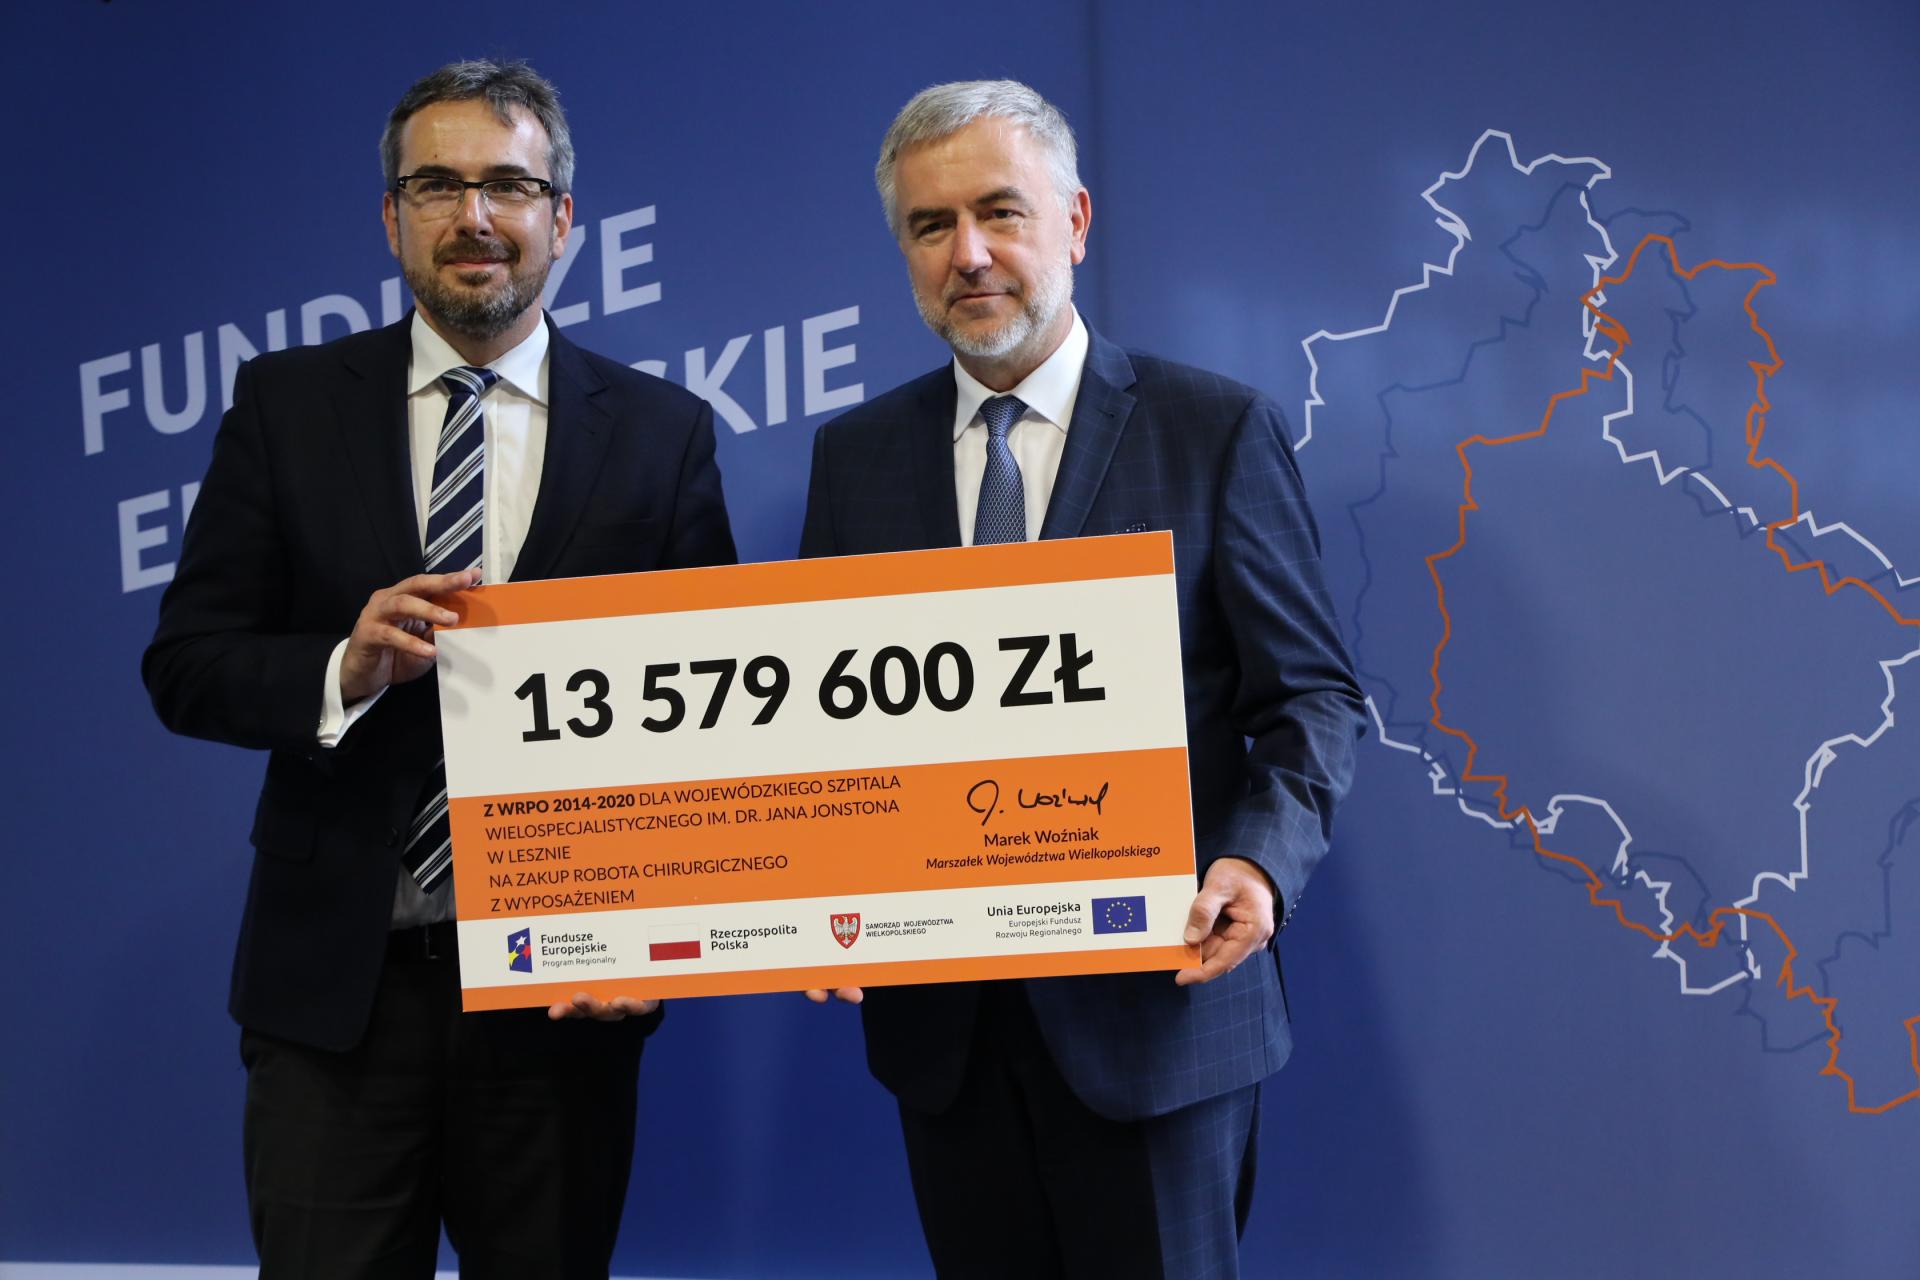 Kolejne wsparcie dla wielkopolskich lecznic od Marszałka. Łącznie już 670 mln z UE dla szpitali   - zobacz więcej